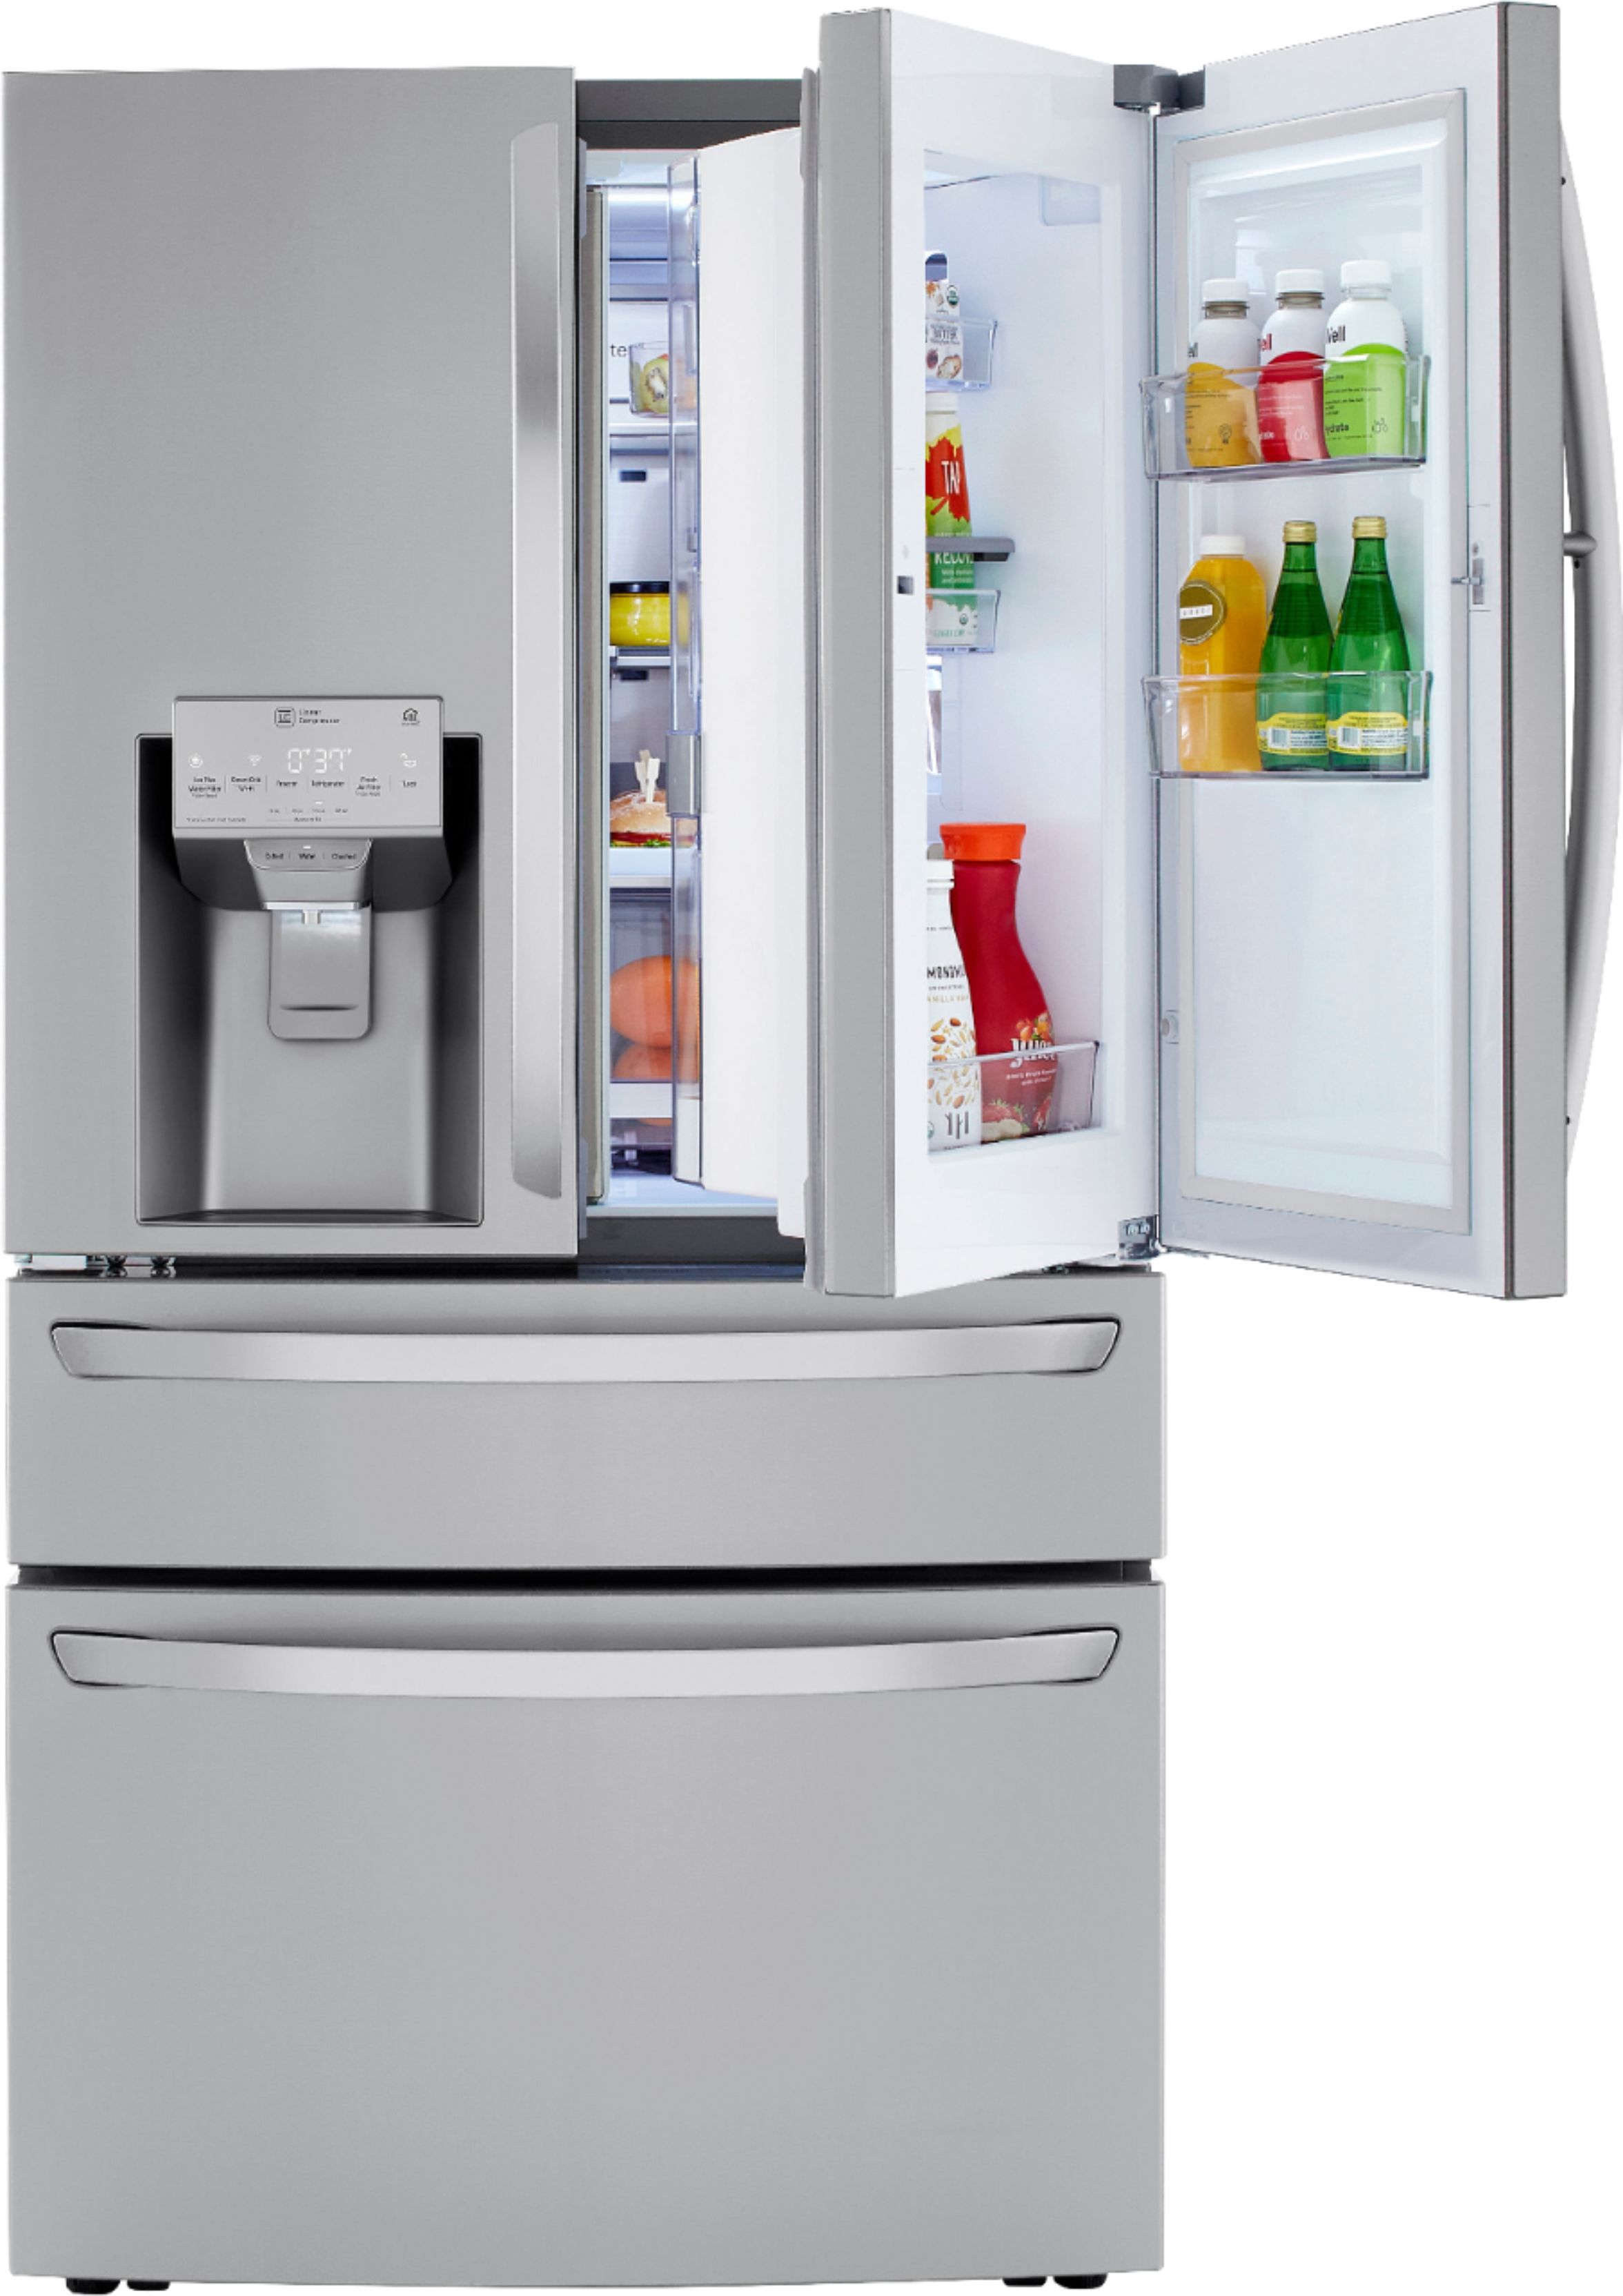 Compare Lg 22 5 Cu Ft 4 Door French Door Counter Depth Refrigerator